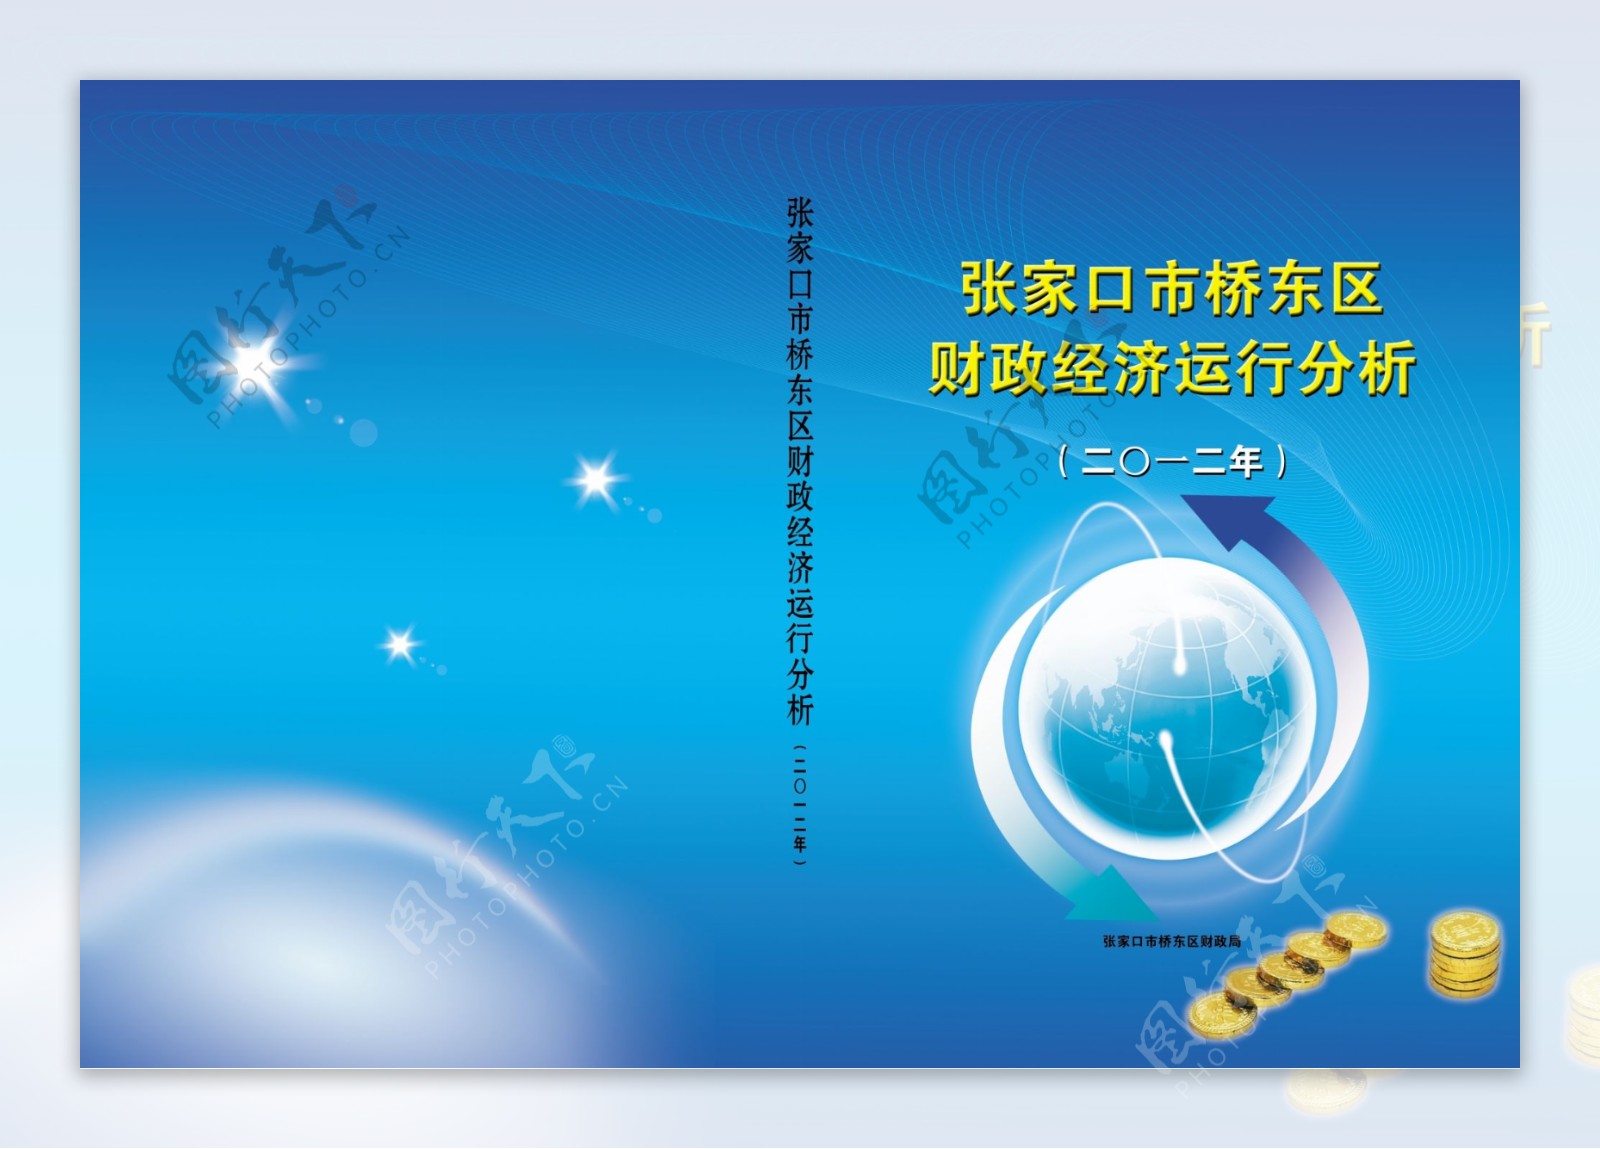 桥东区财政局封面图片